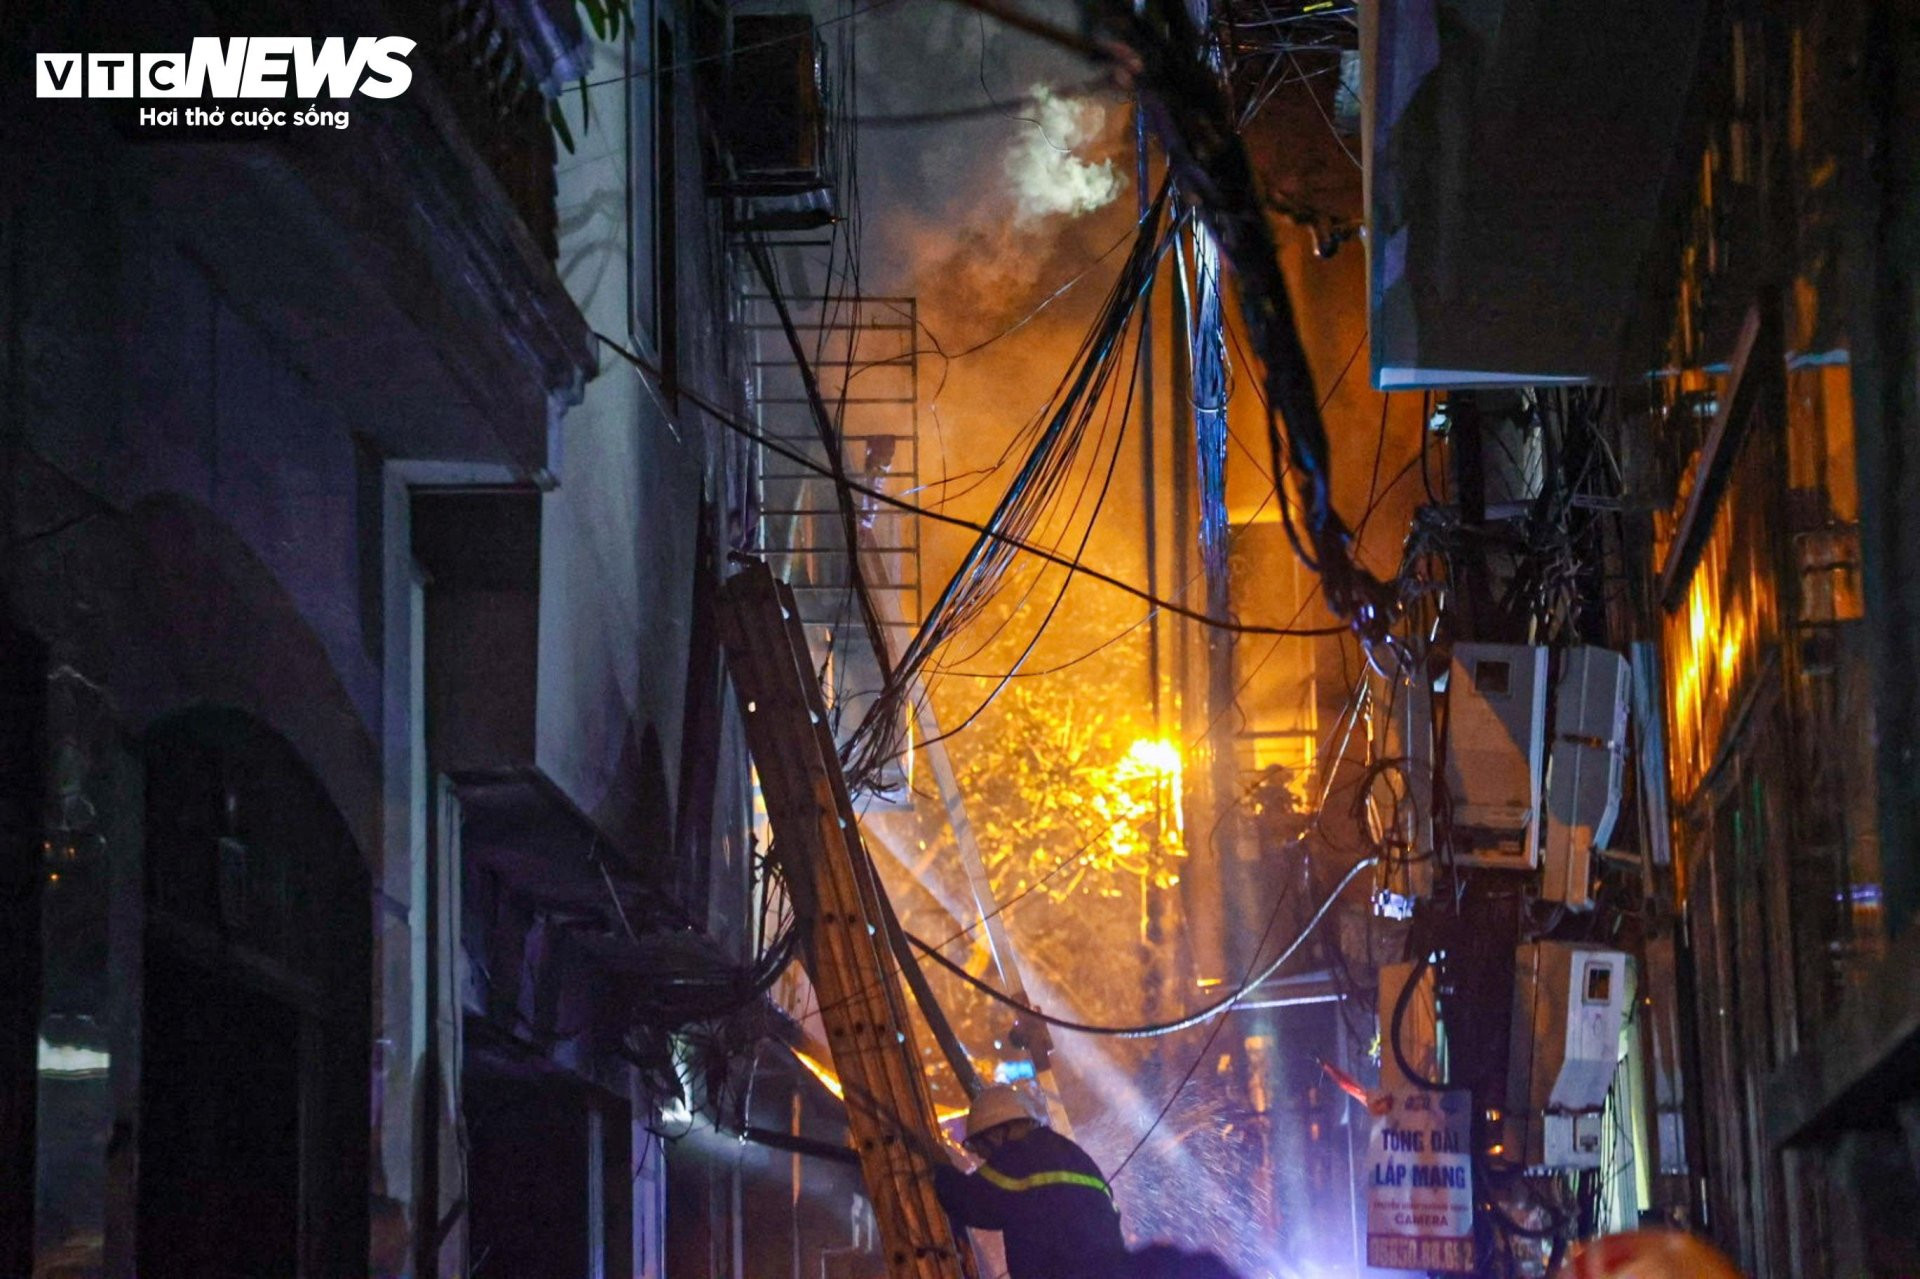 Hiện trường vụ cháy chung cư mini ở Hà Nội trong đêm, nhiều người ngất xỉu - 5